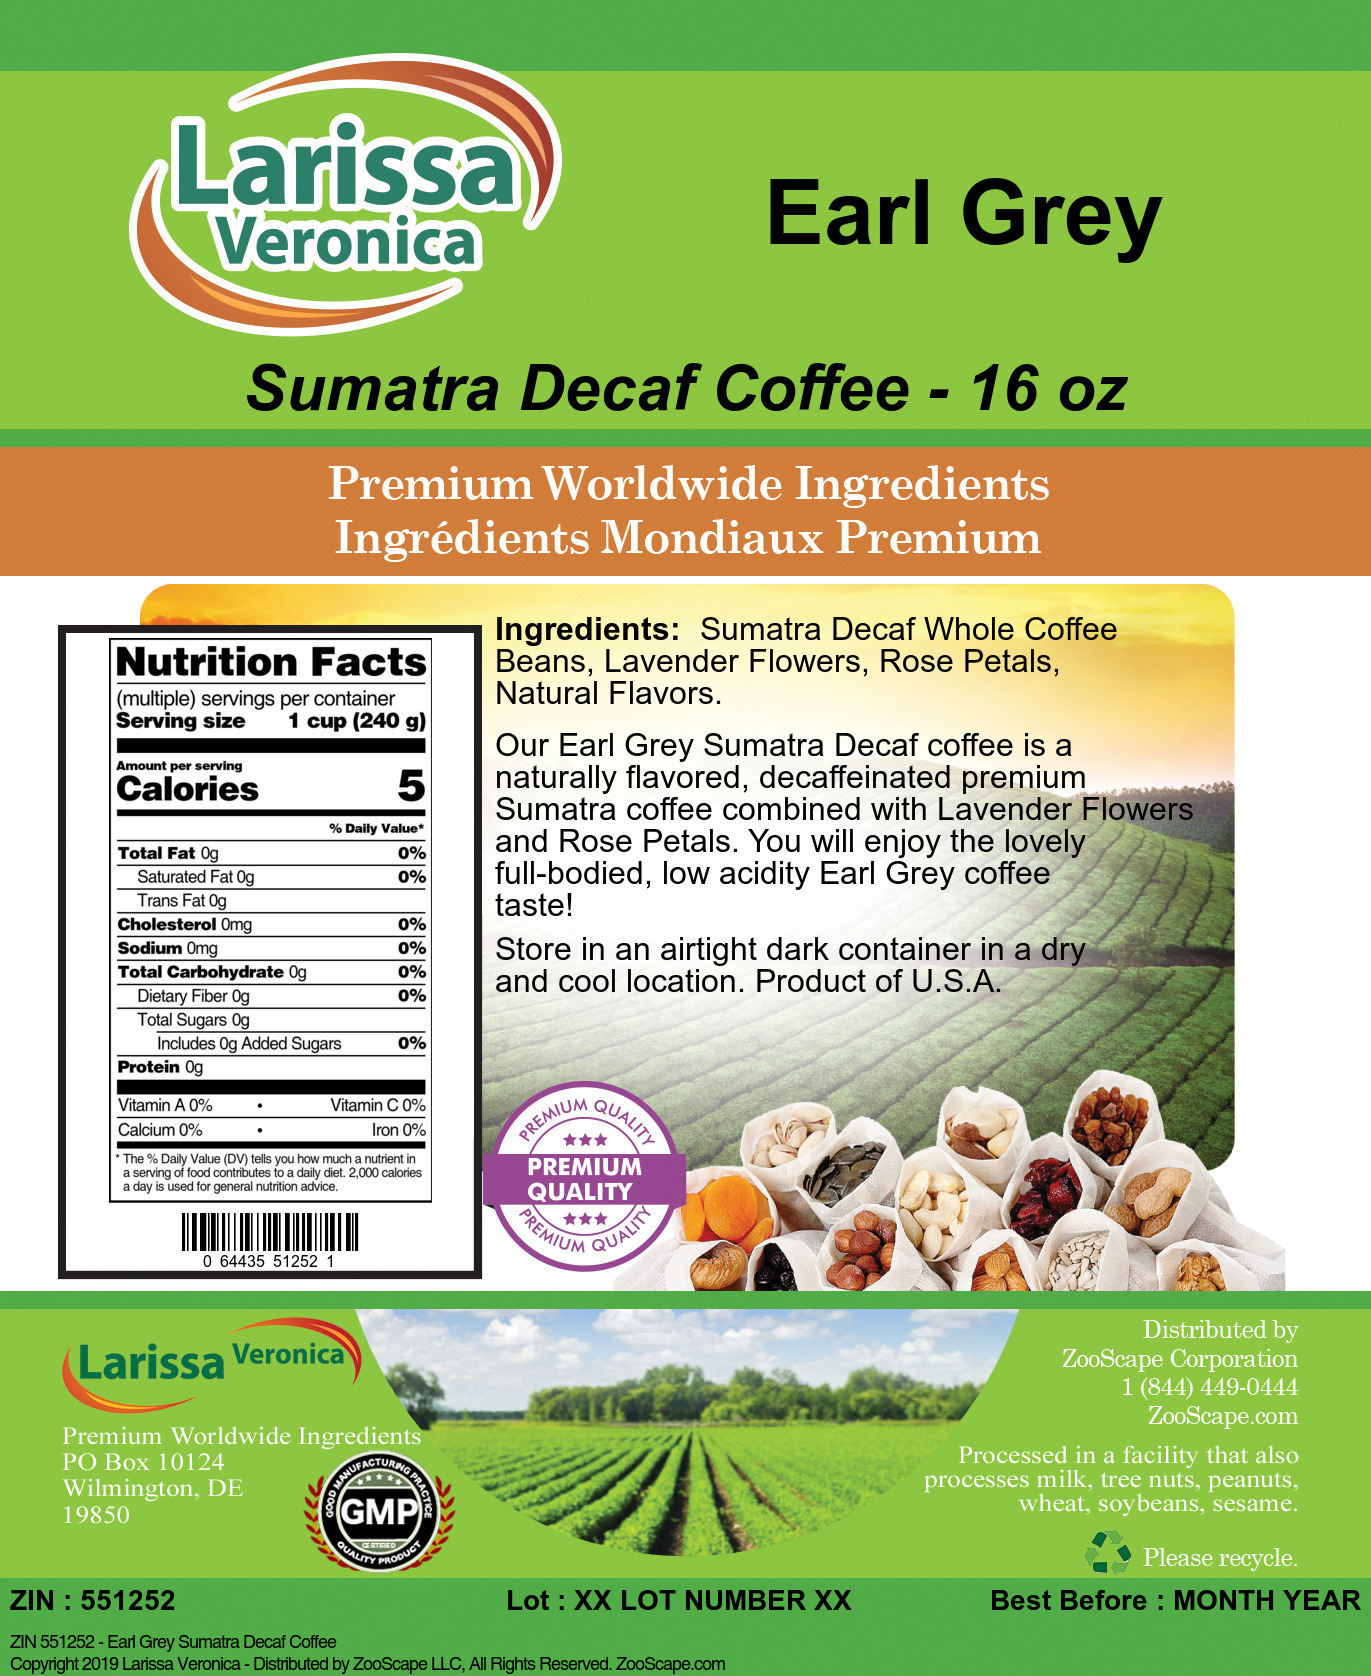 Earl Grey Sumatra Decaf Coffee - Label